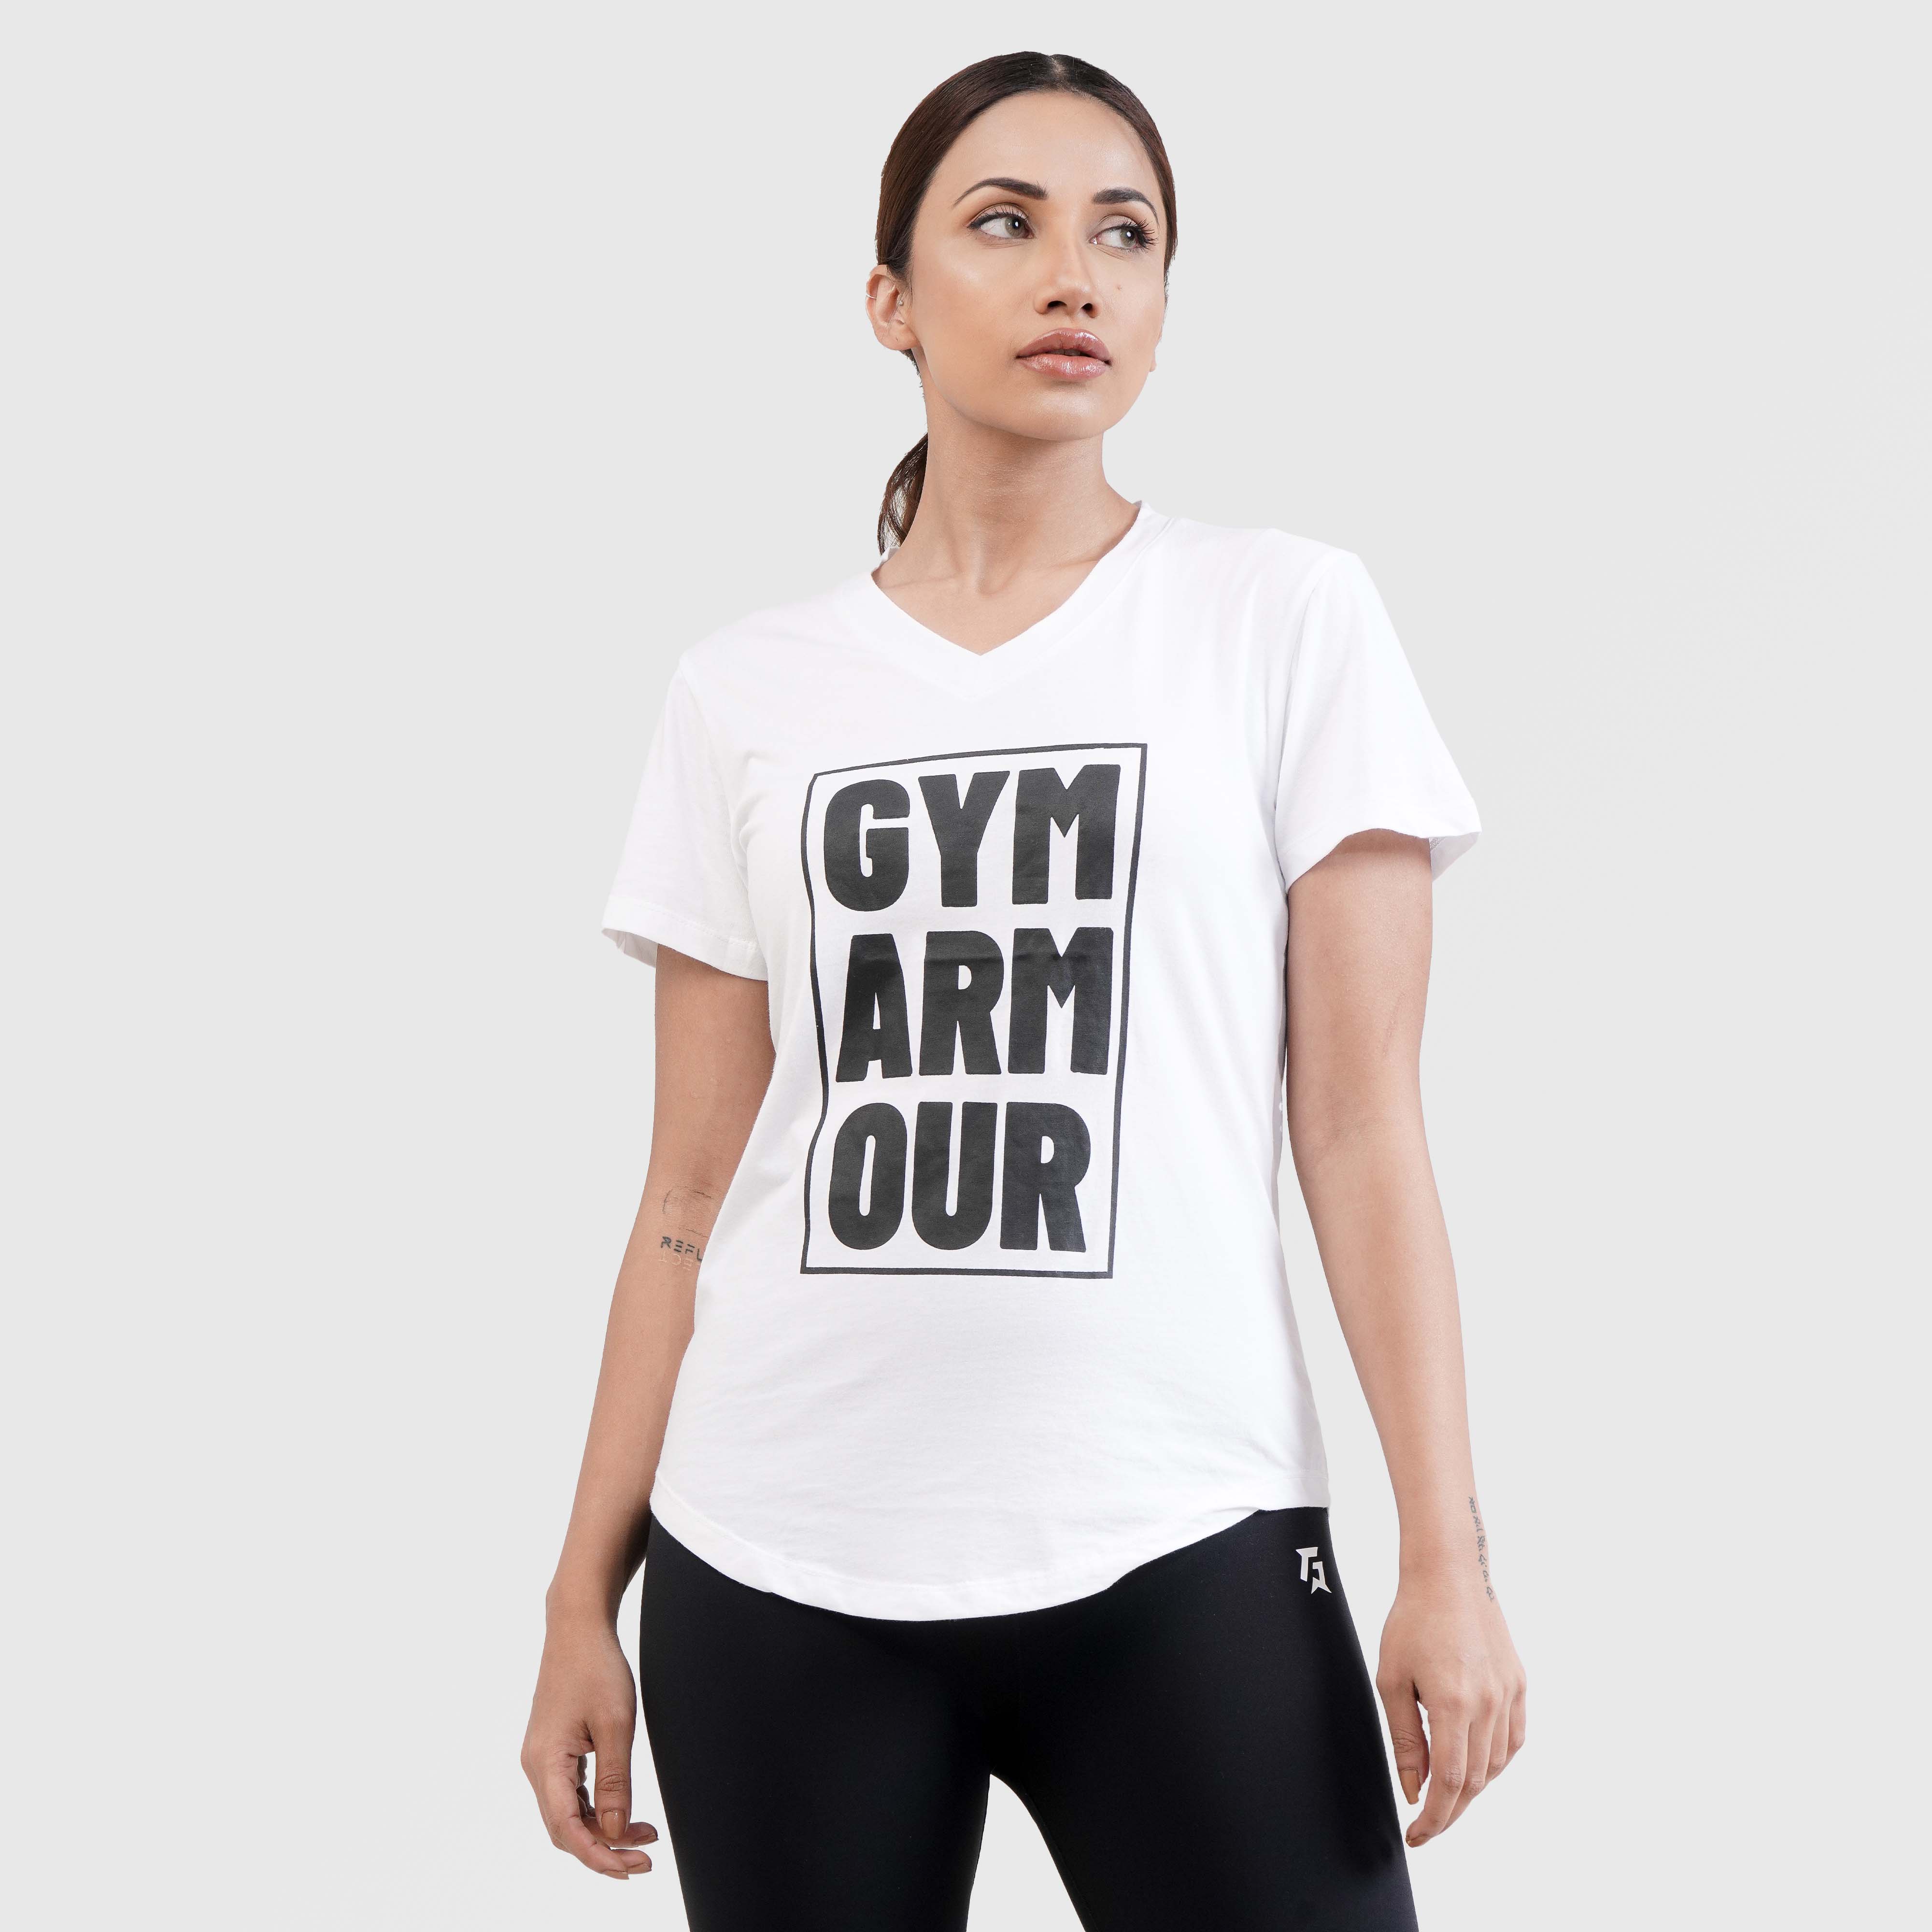 Gym-Arm-Our Tee (White)